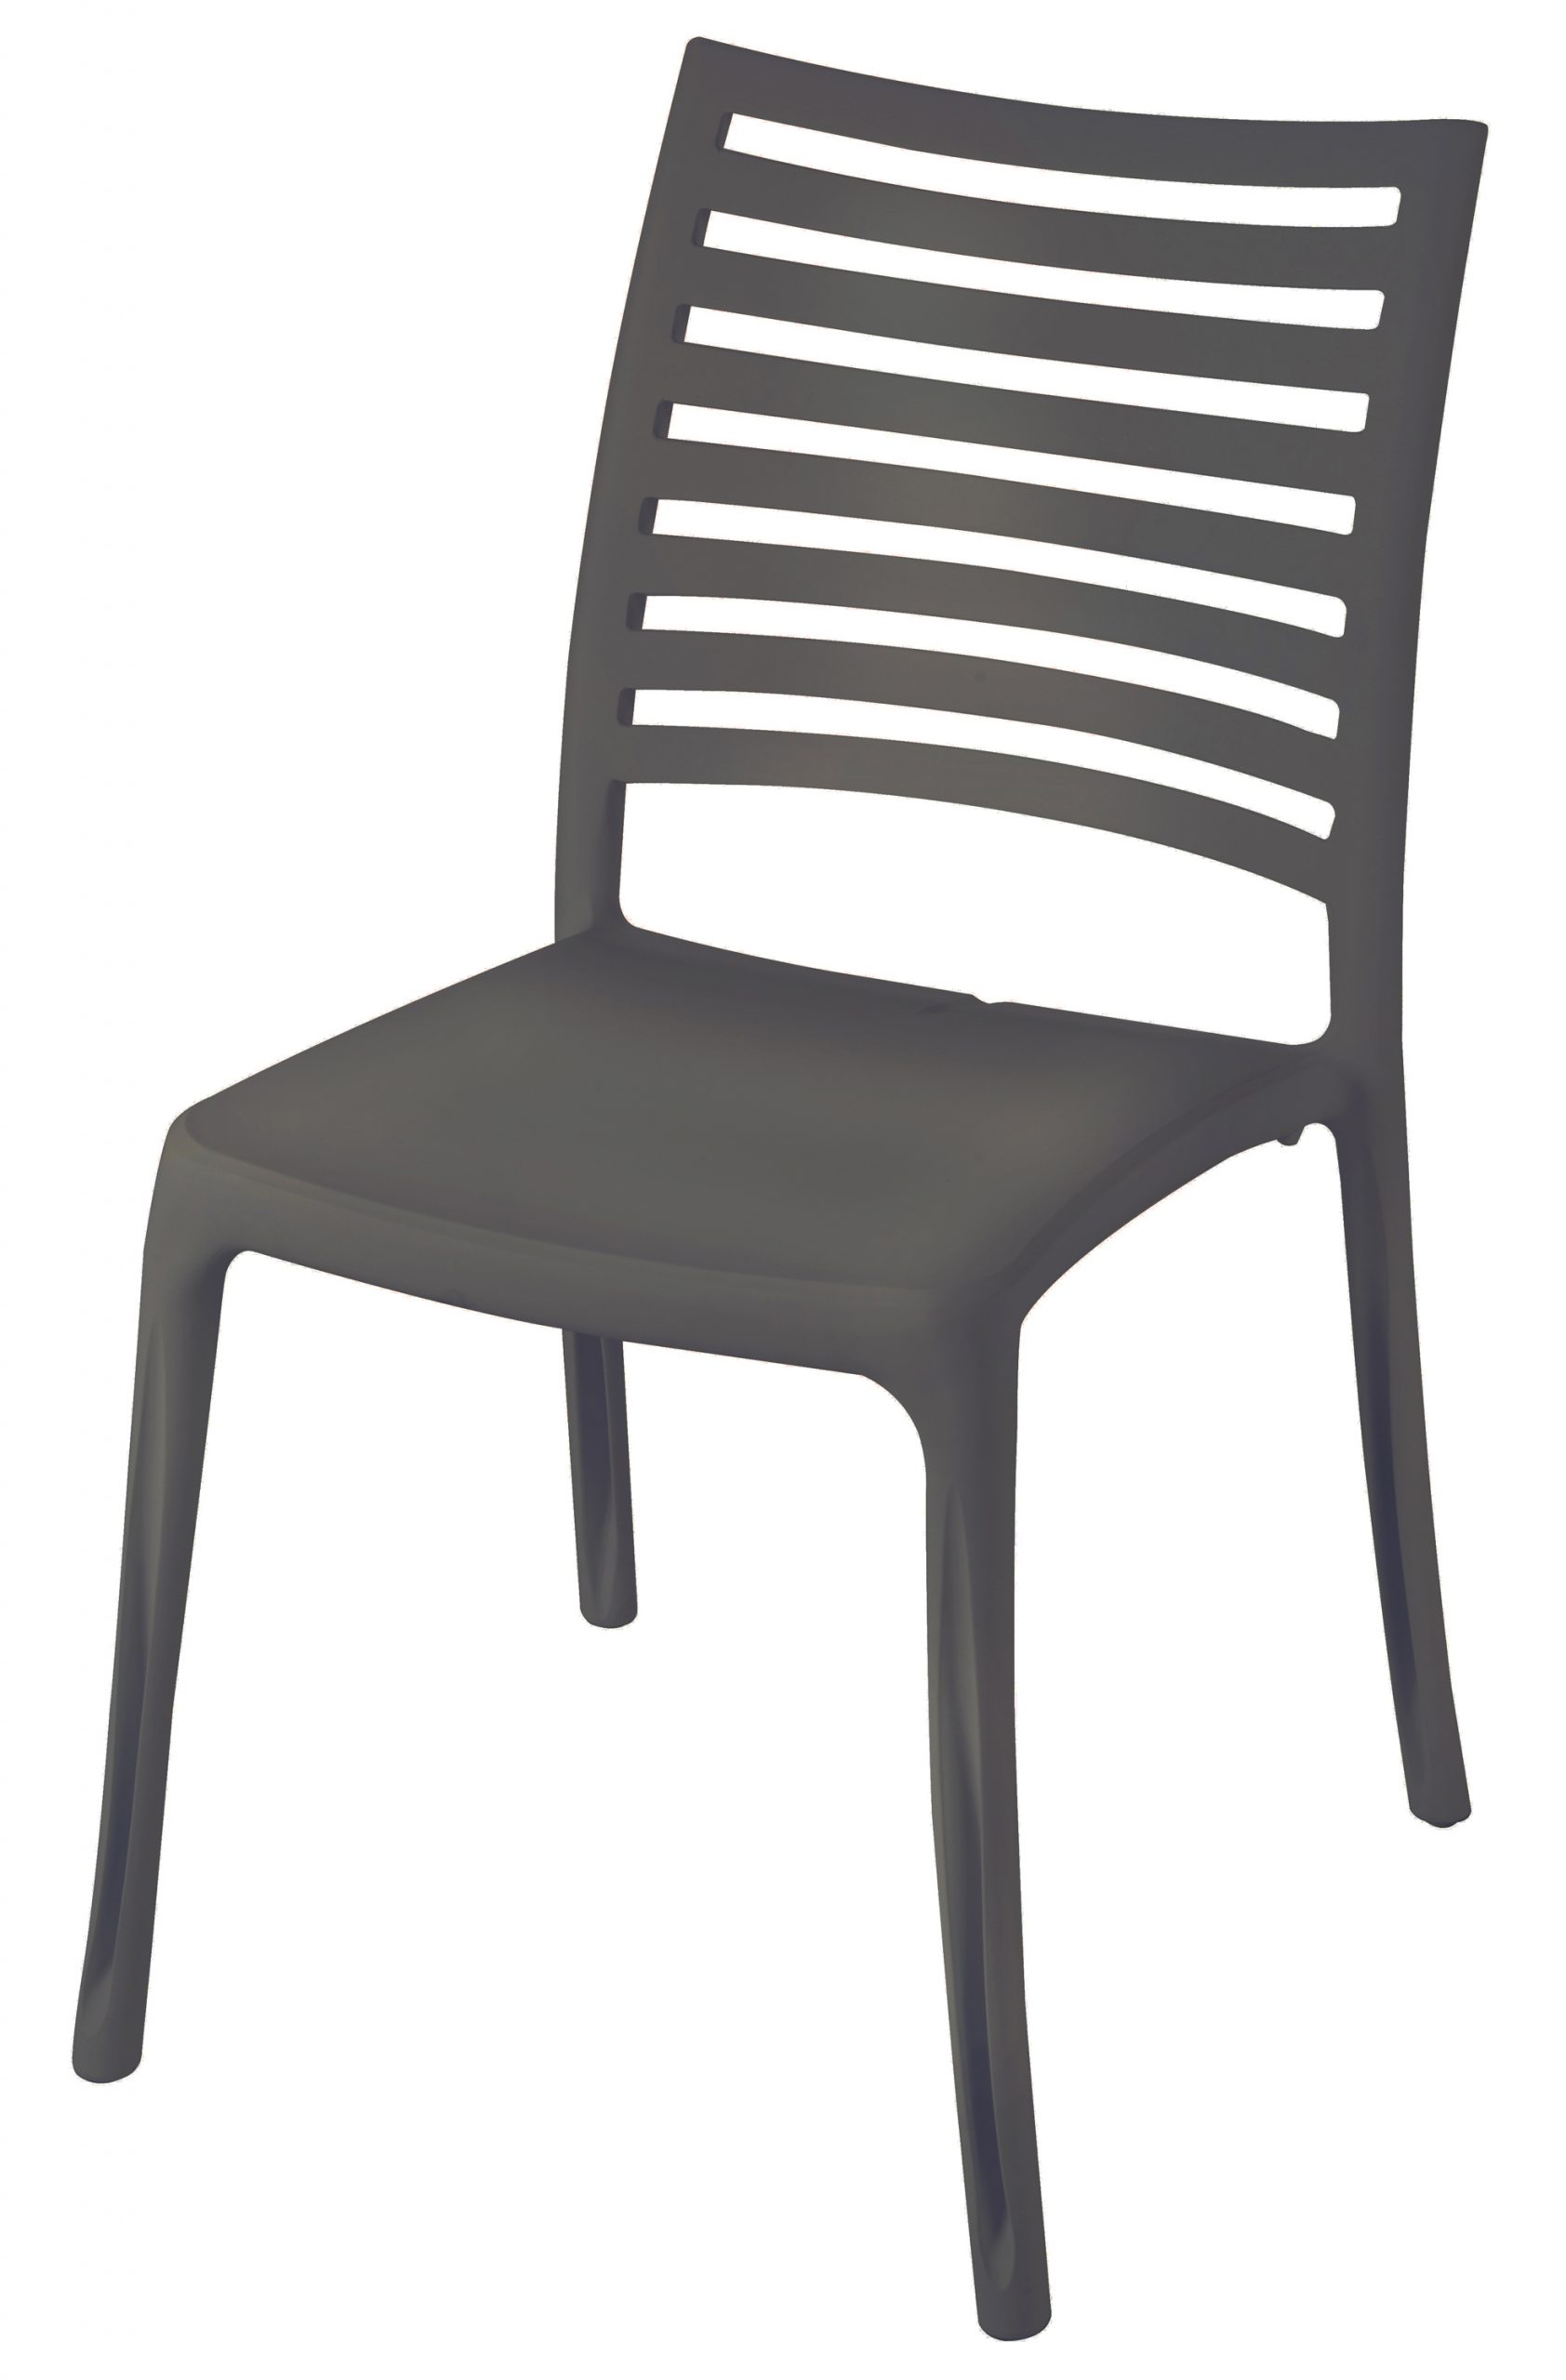 Sunday Garden Bistro Chair | Grosfillex dedans Chaise De Jardin Grosfillex